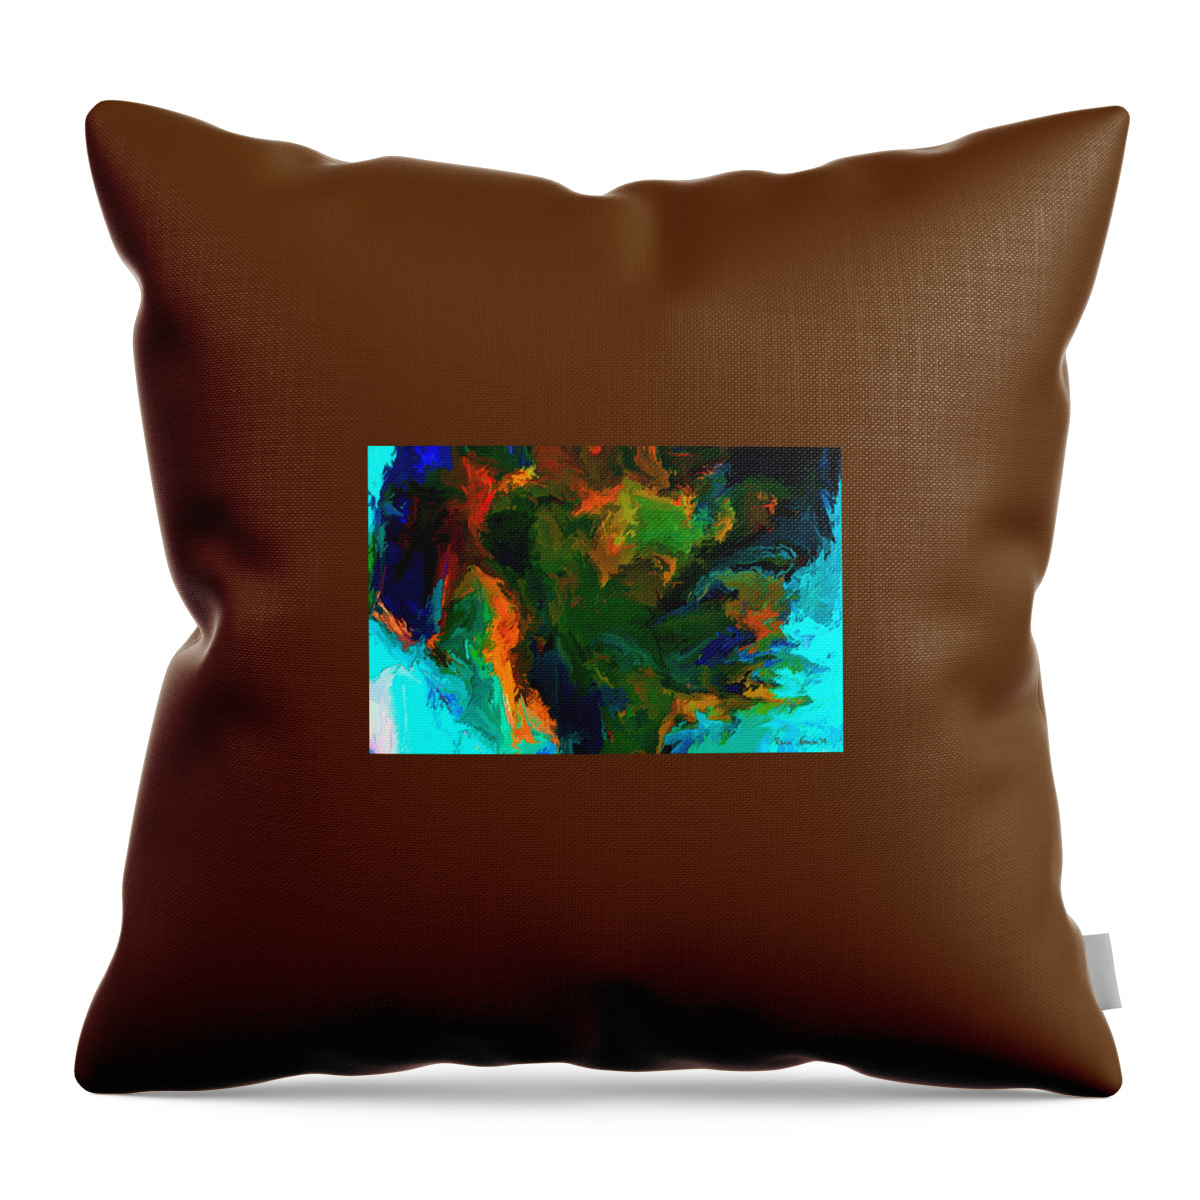  Throw Pillow featuring the digital art Continental Drift #1 by Rein Nomm